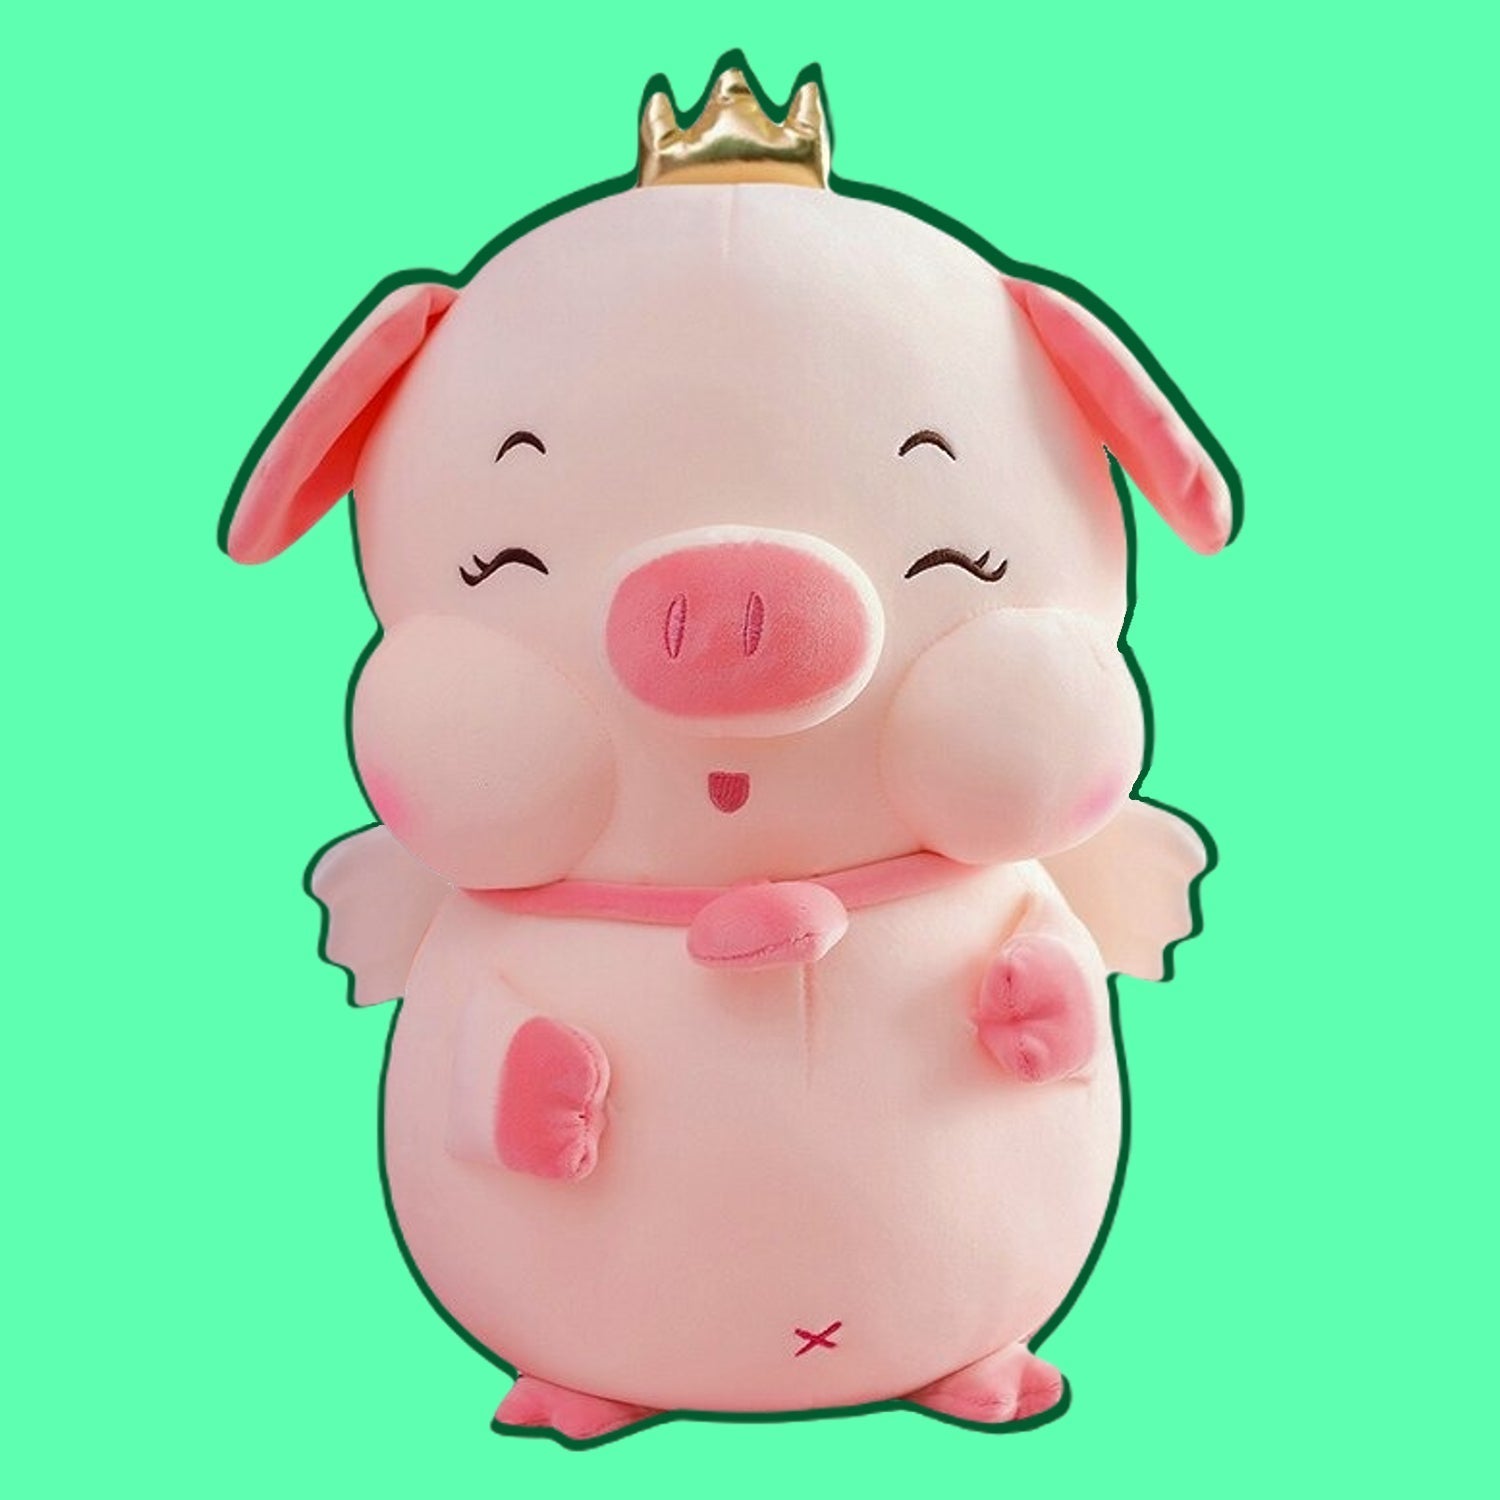 Cute Angel Pig with crown